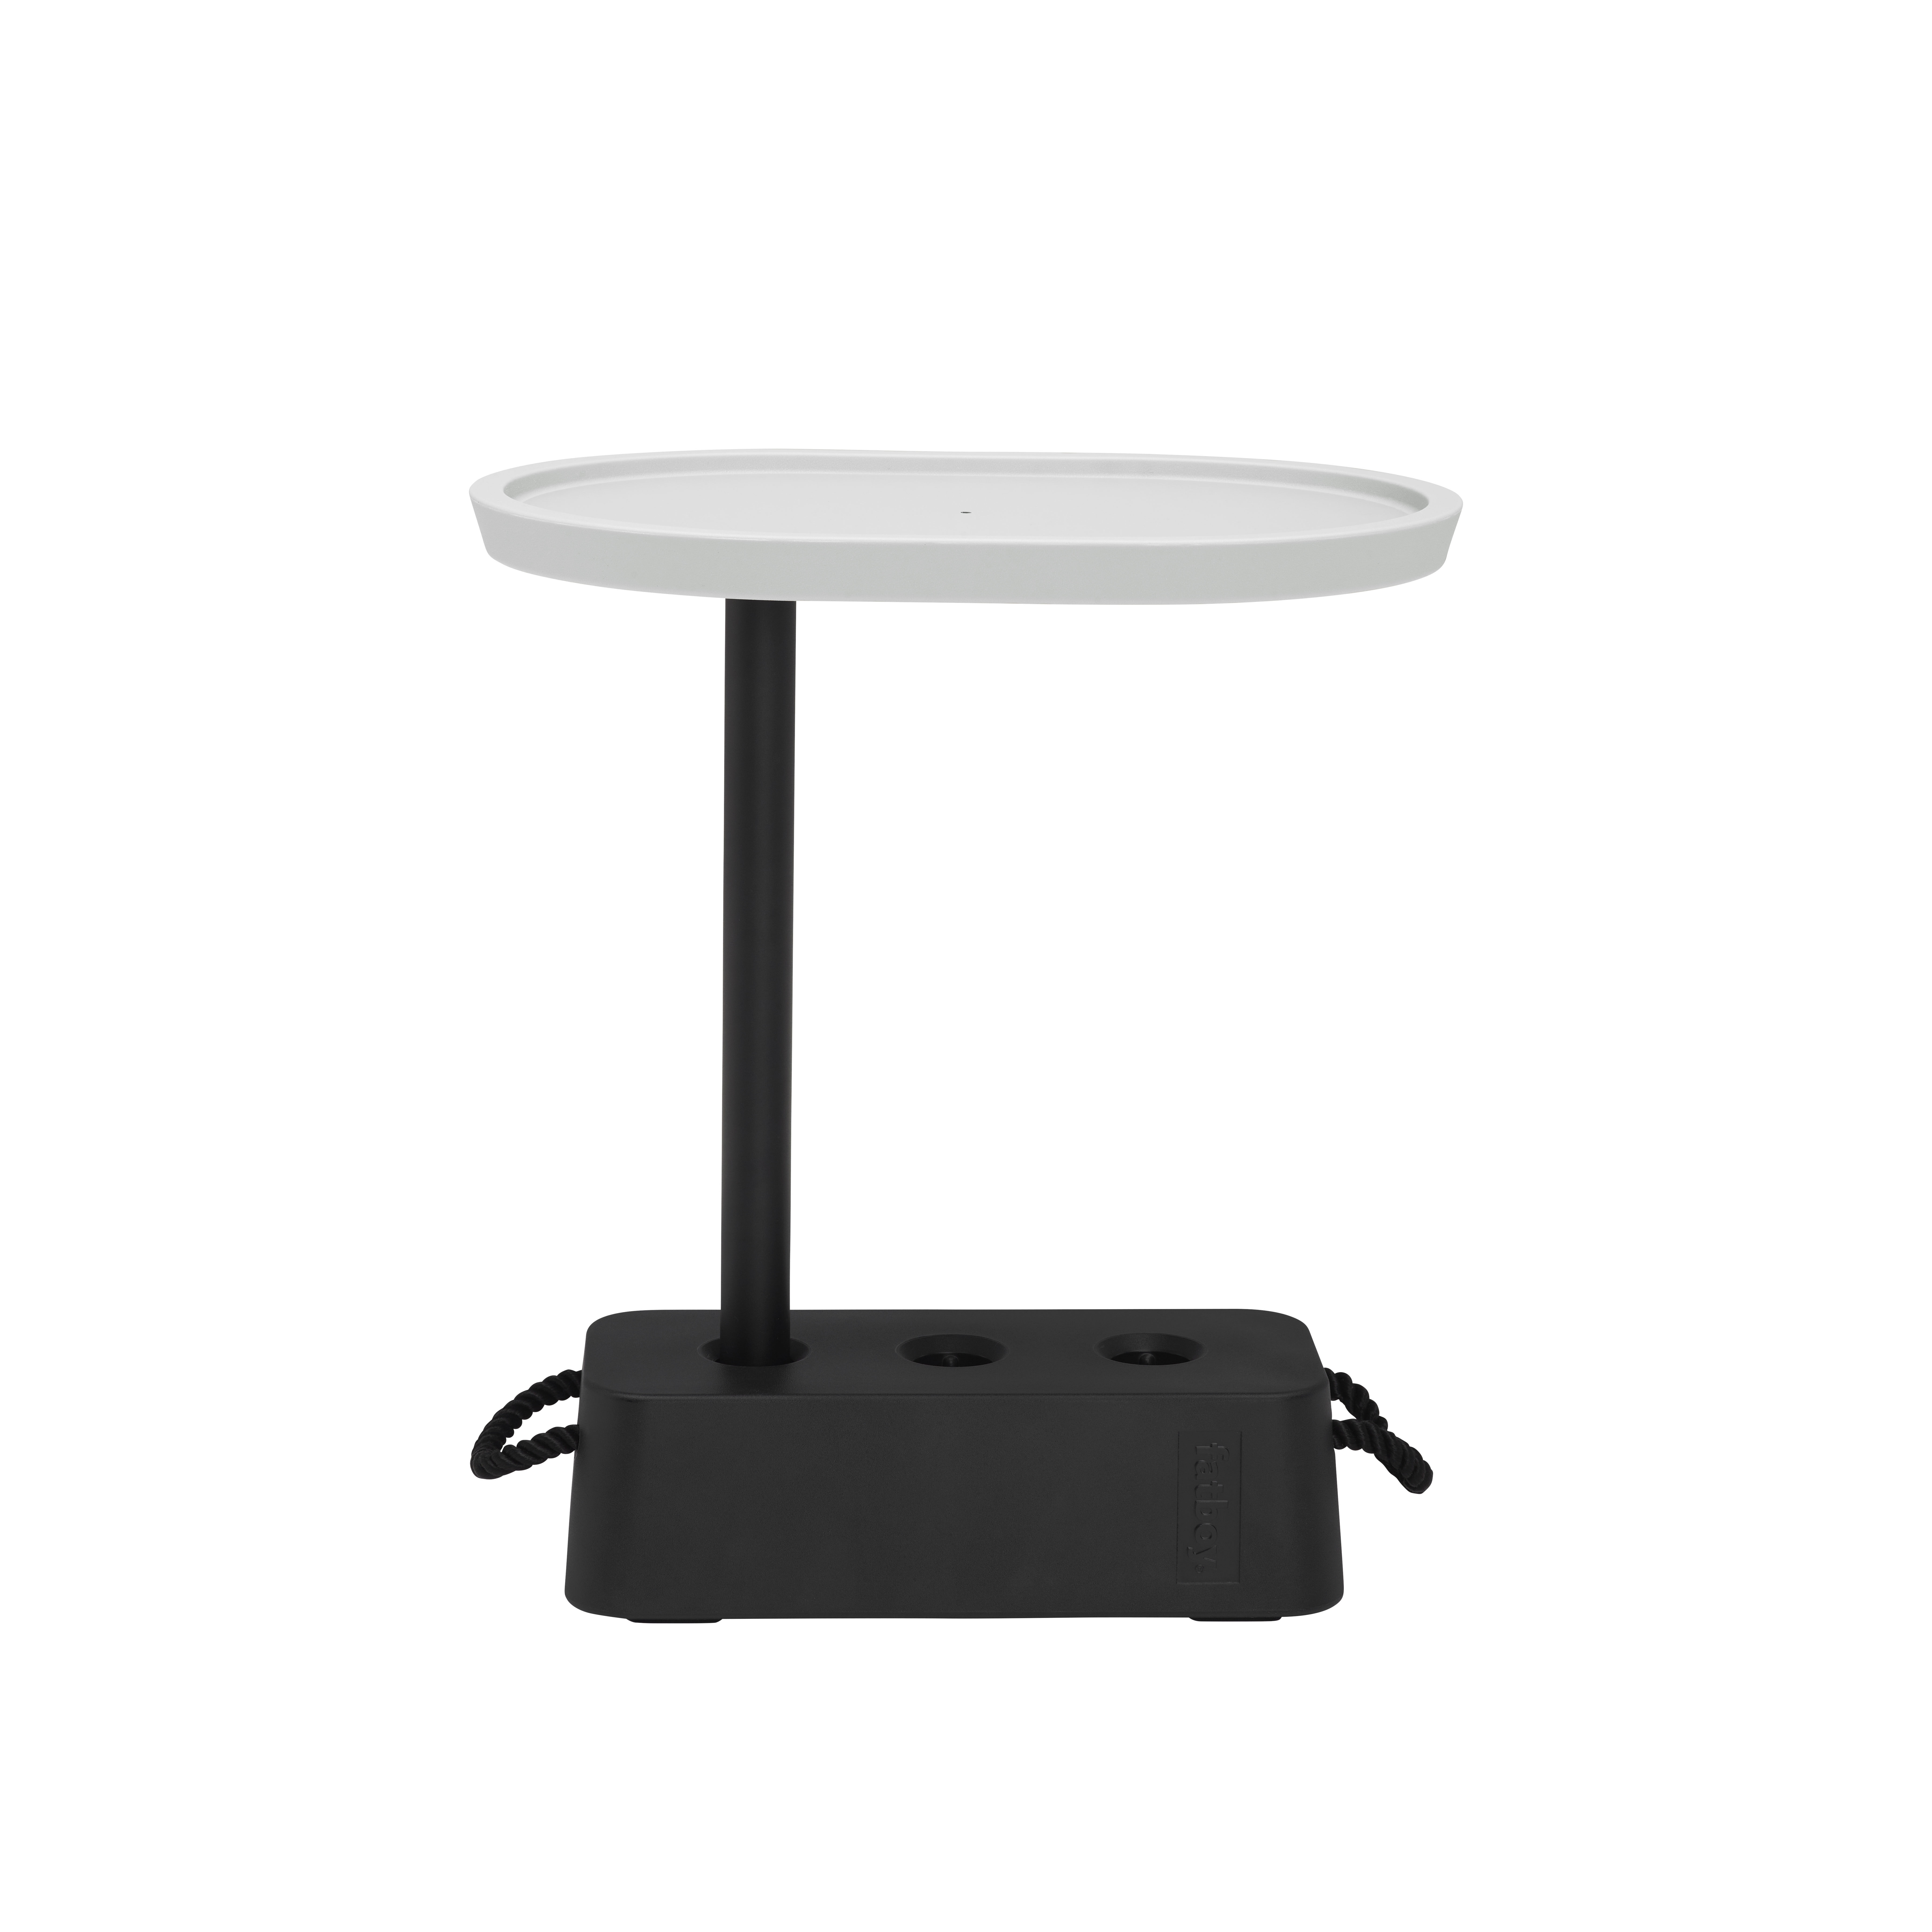 Table d'appoint Brick / 56 x 39 x H 63,5 cm - Plateau rotatif - Fatboy gris en matière plastique